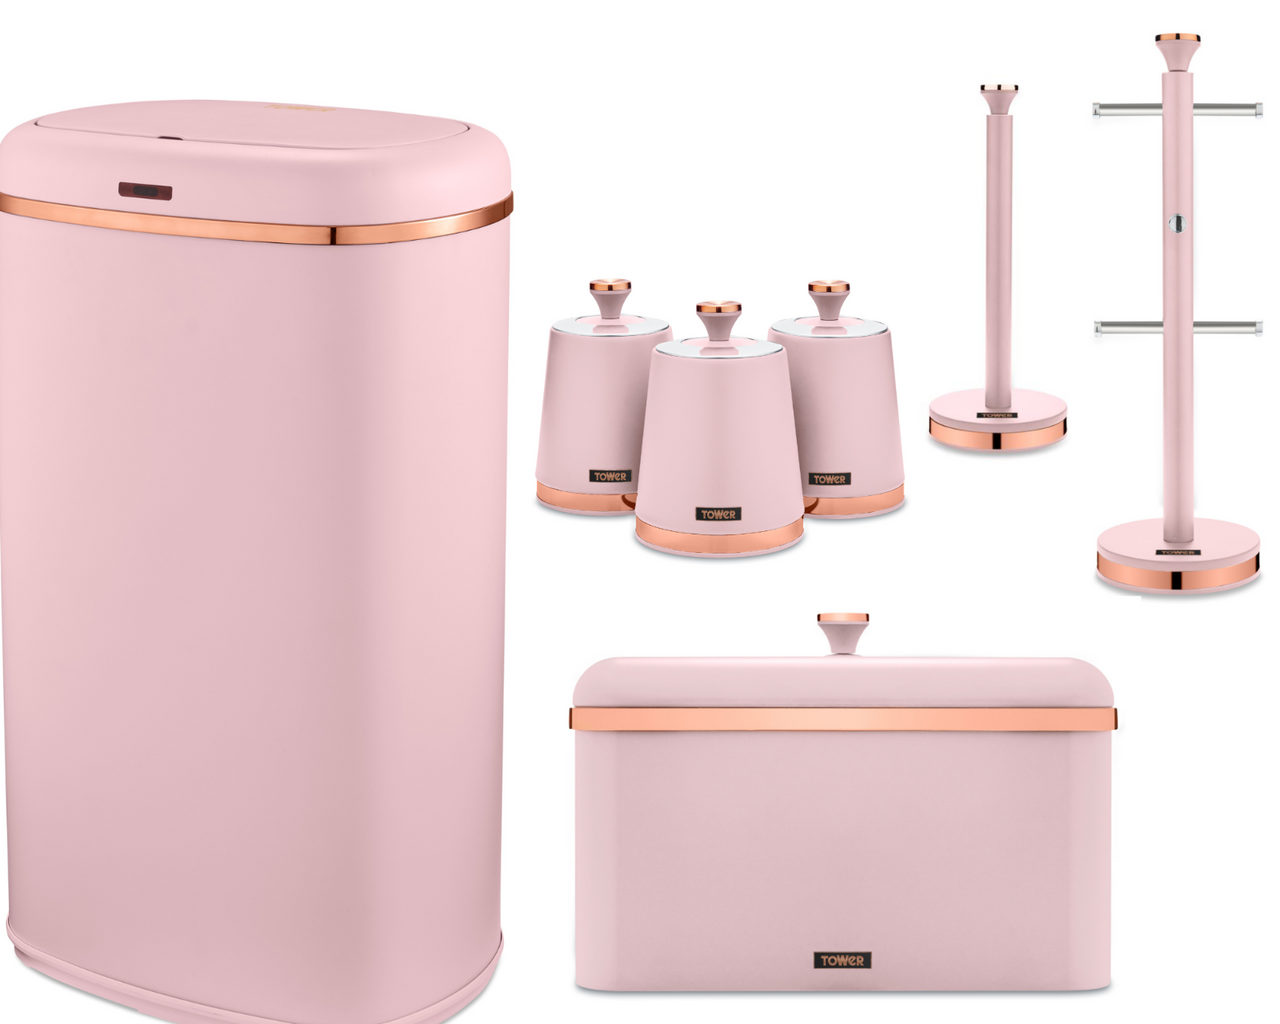 Tower Cavaletto Kitchen Sensor Bin & Storage Accessories Set of 7 Pink/Rose Gold